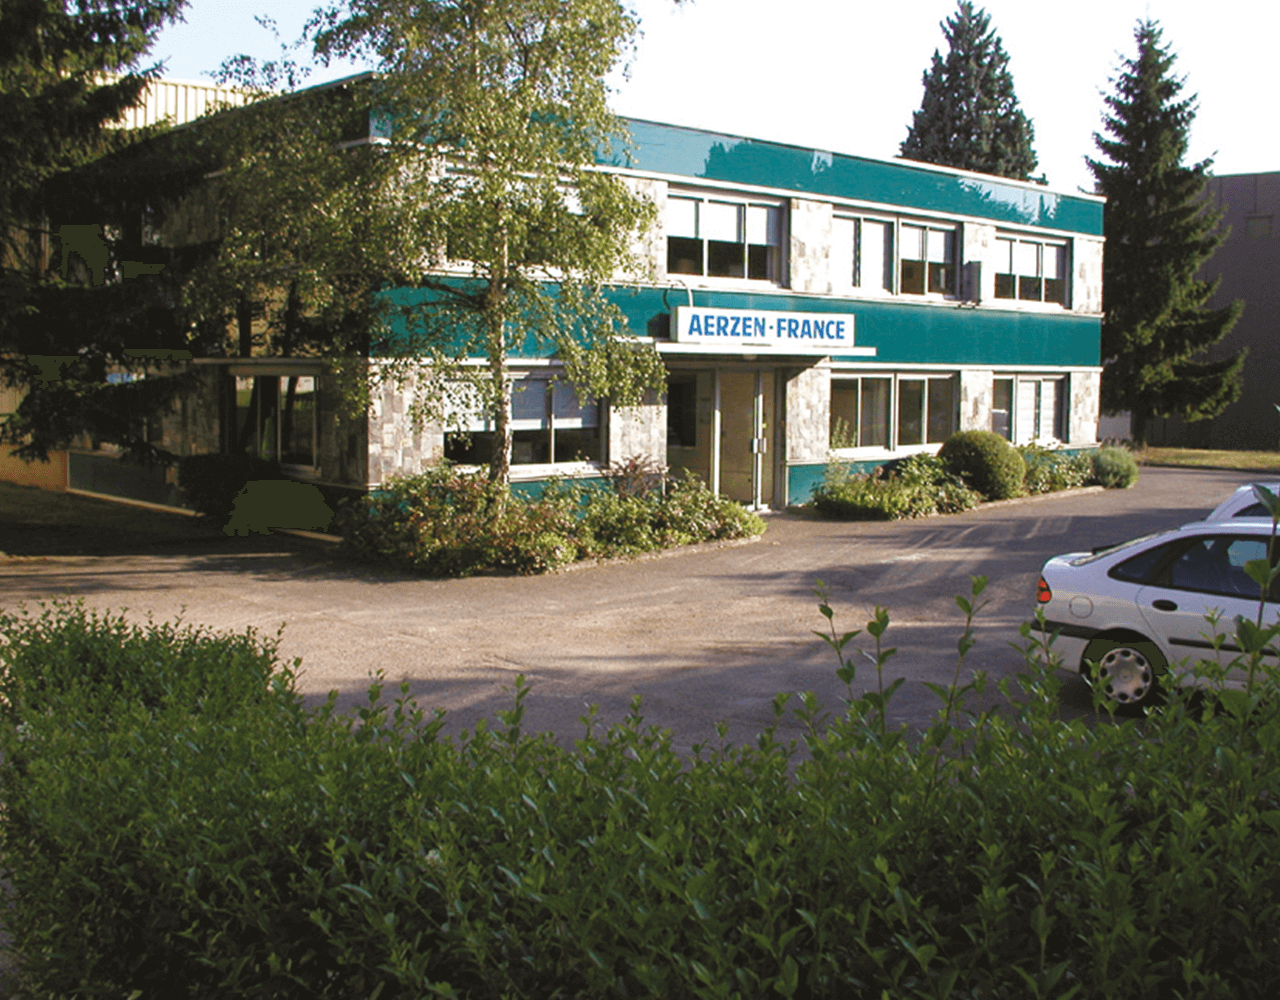 AERZEN 1969 年成立的首个外国子公司大楼的照片